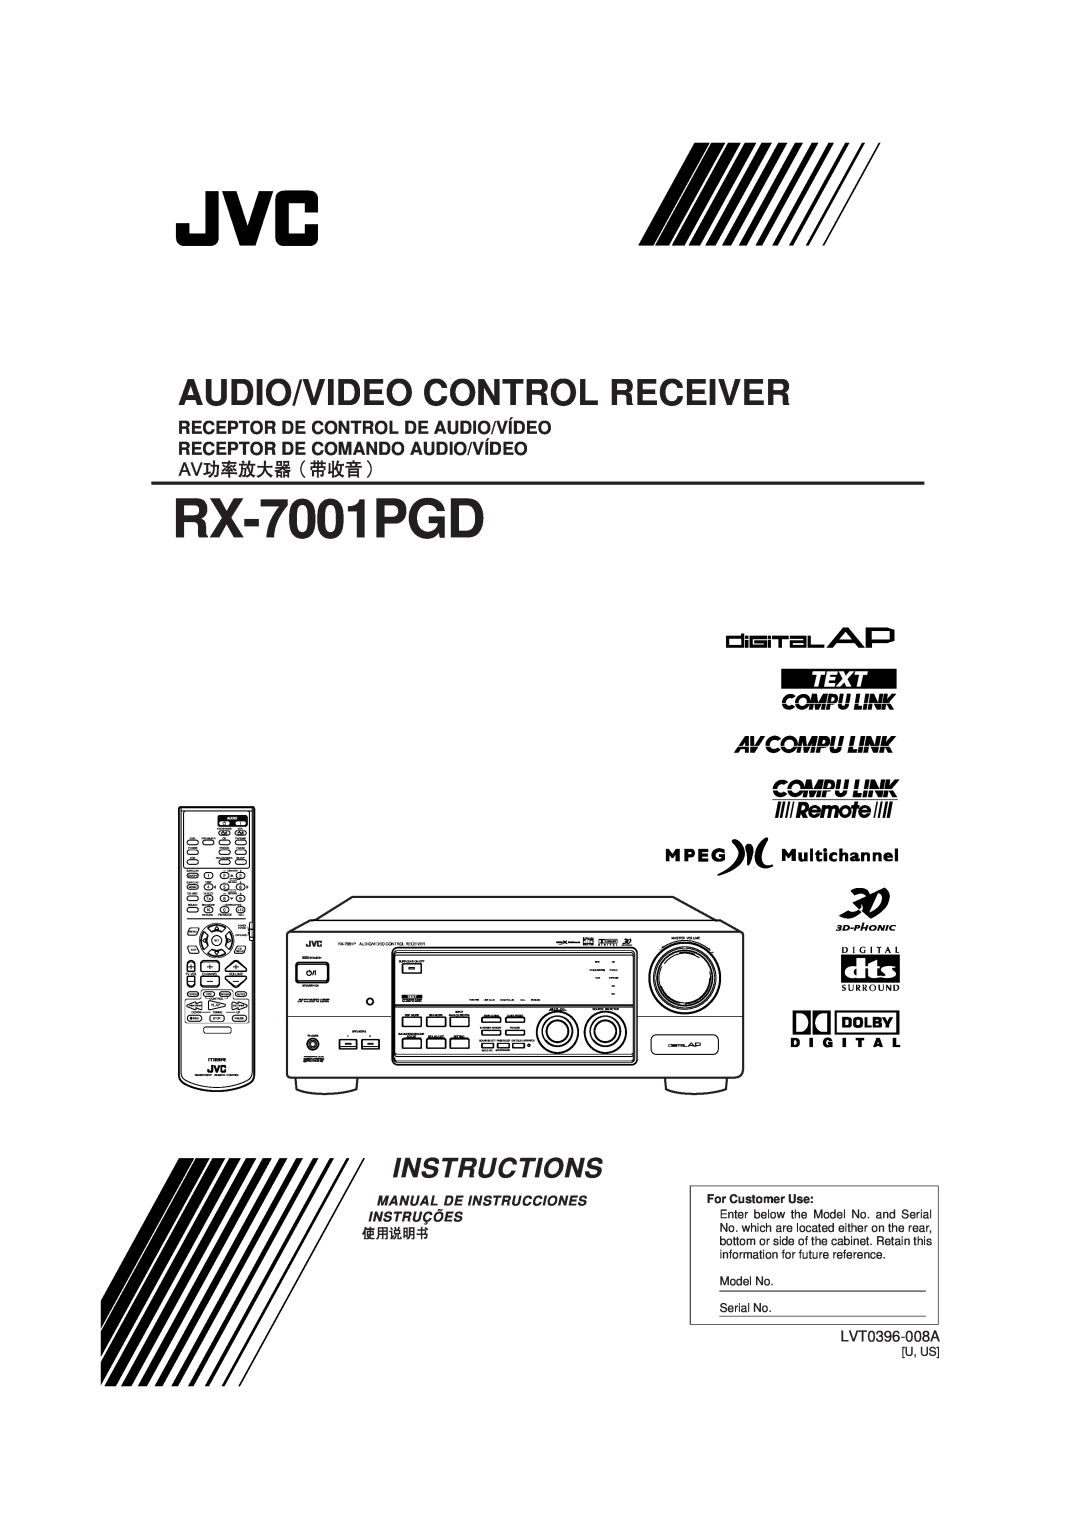 JVC RX-7001PGD manual Audio/Video Control Receiver, Instructions, Receptor De Control De Audio/Vídeo, LVT0396-008A 